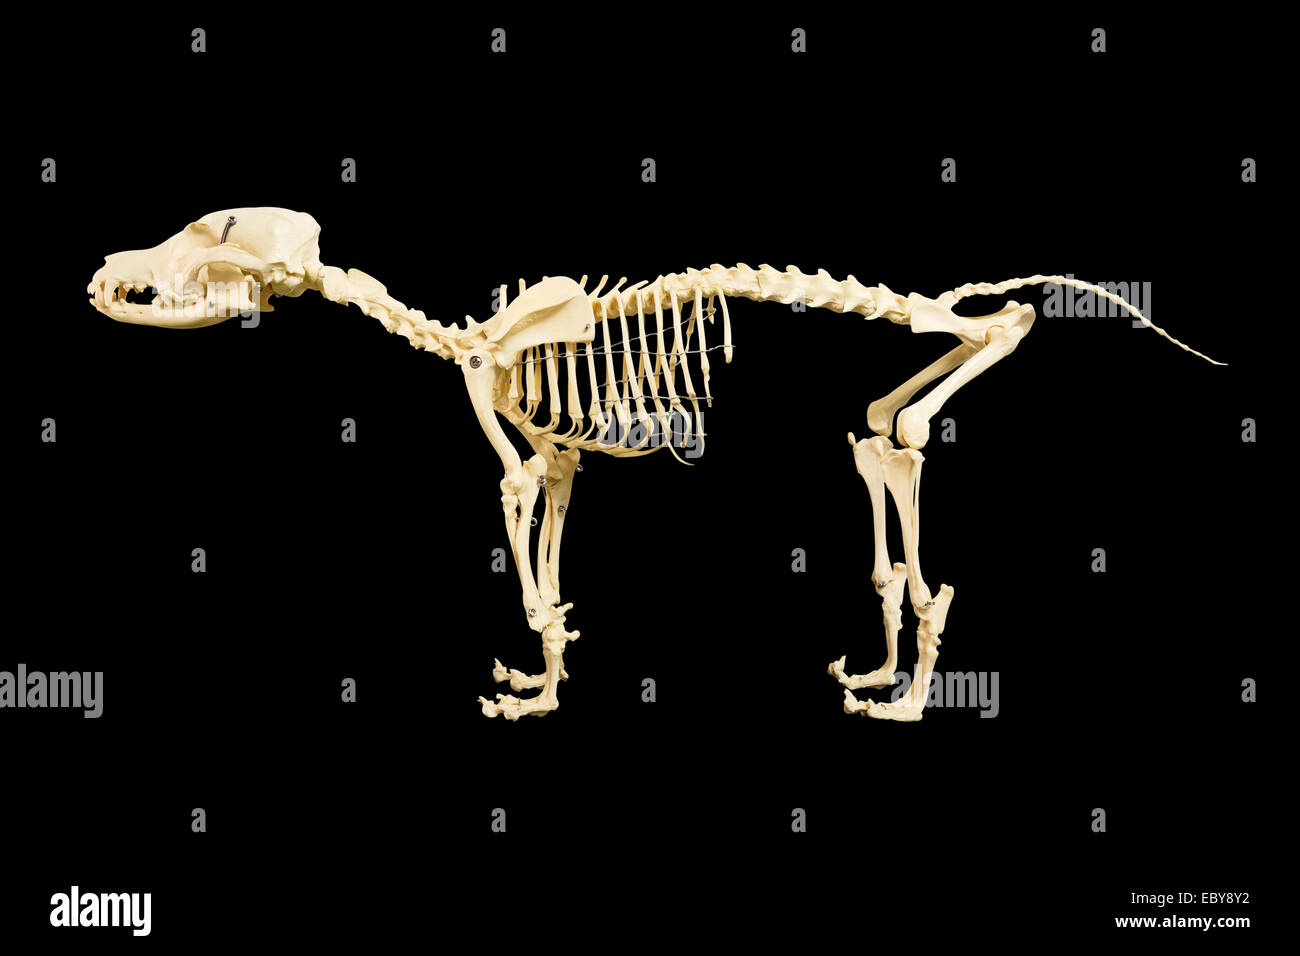 Dog skeleton model on black background Stock Photo